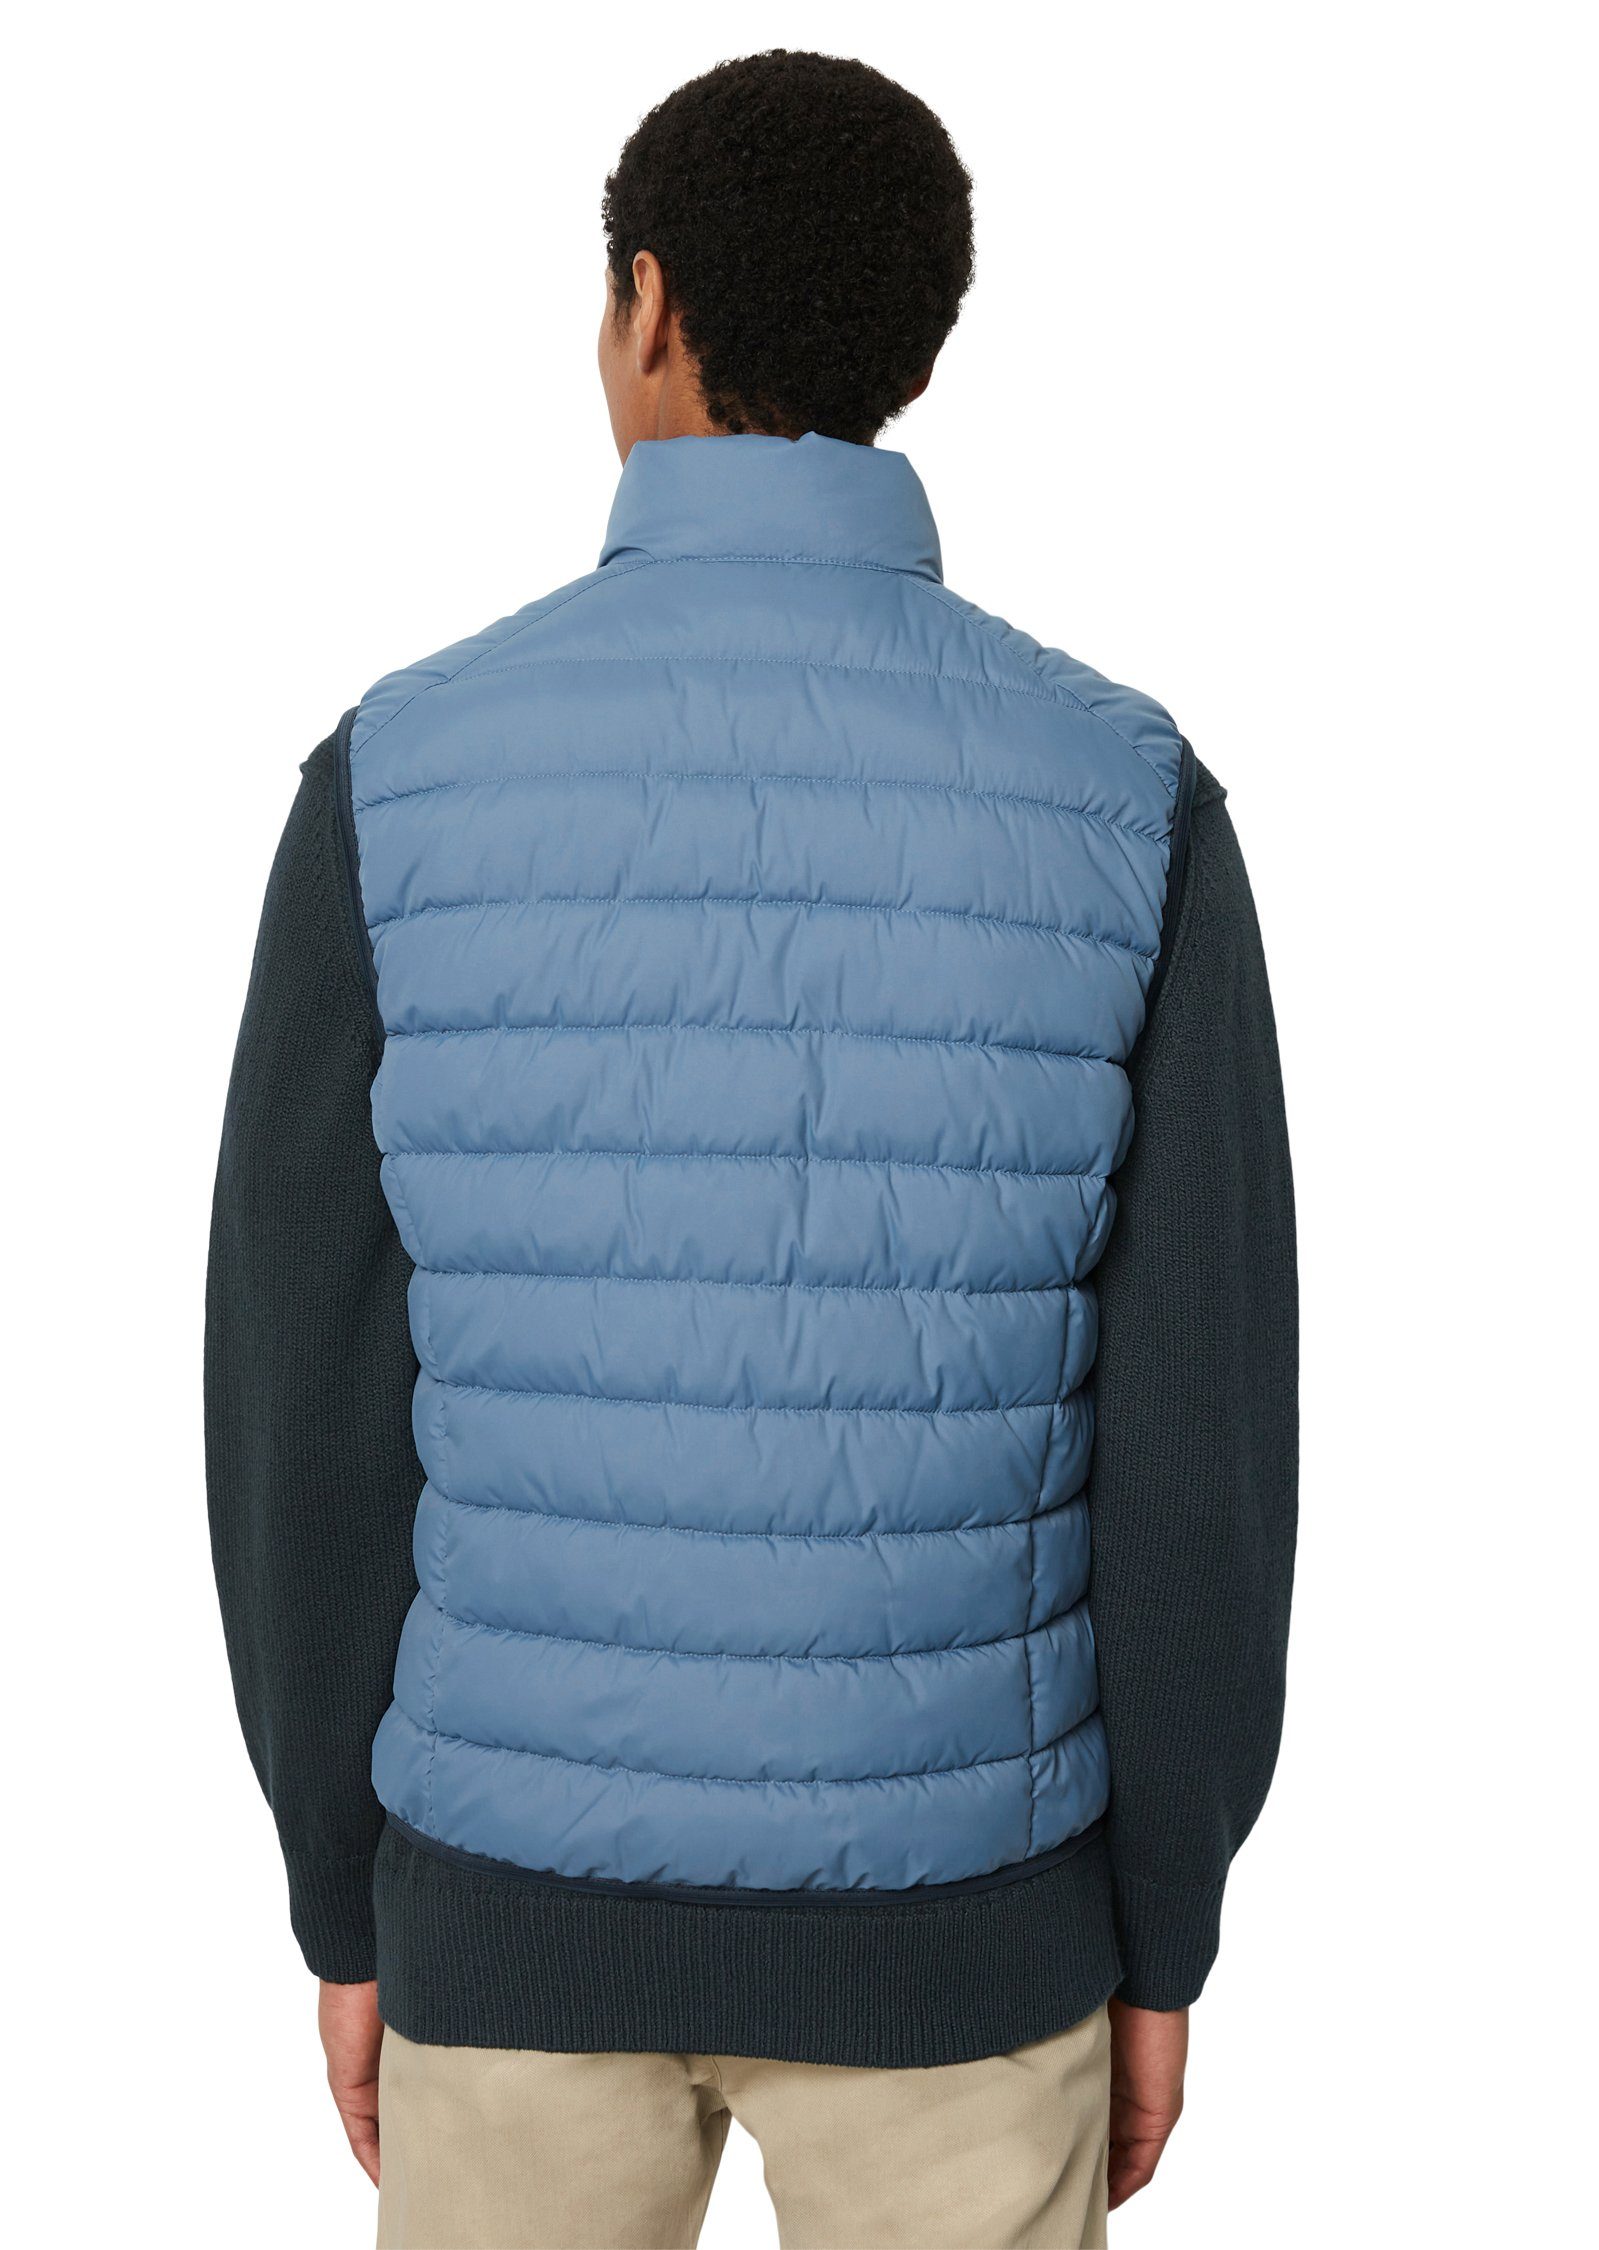 Marc O'Polo Steppweste wedgewood sdnd, stand-up Oberfläche Vest, wasserabweisender mit collar